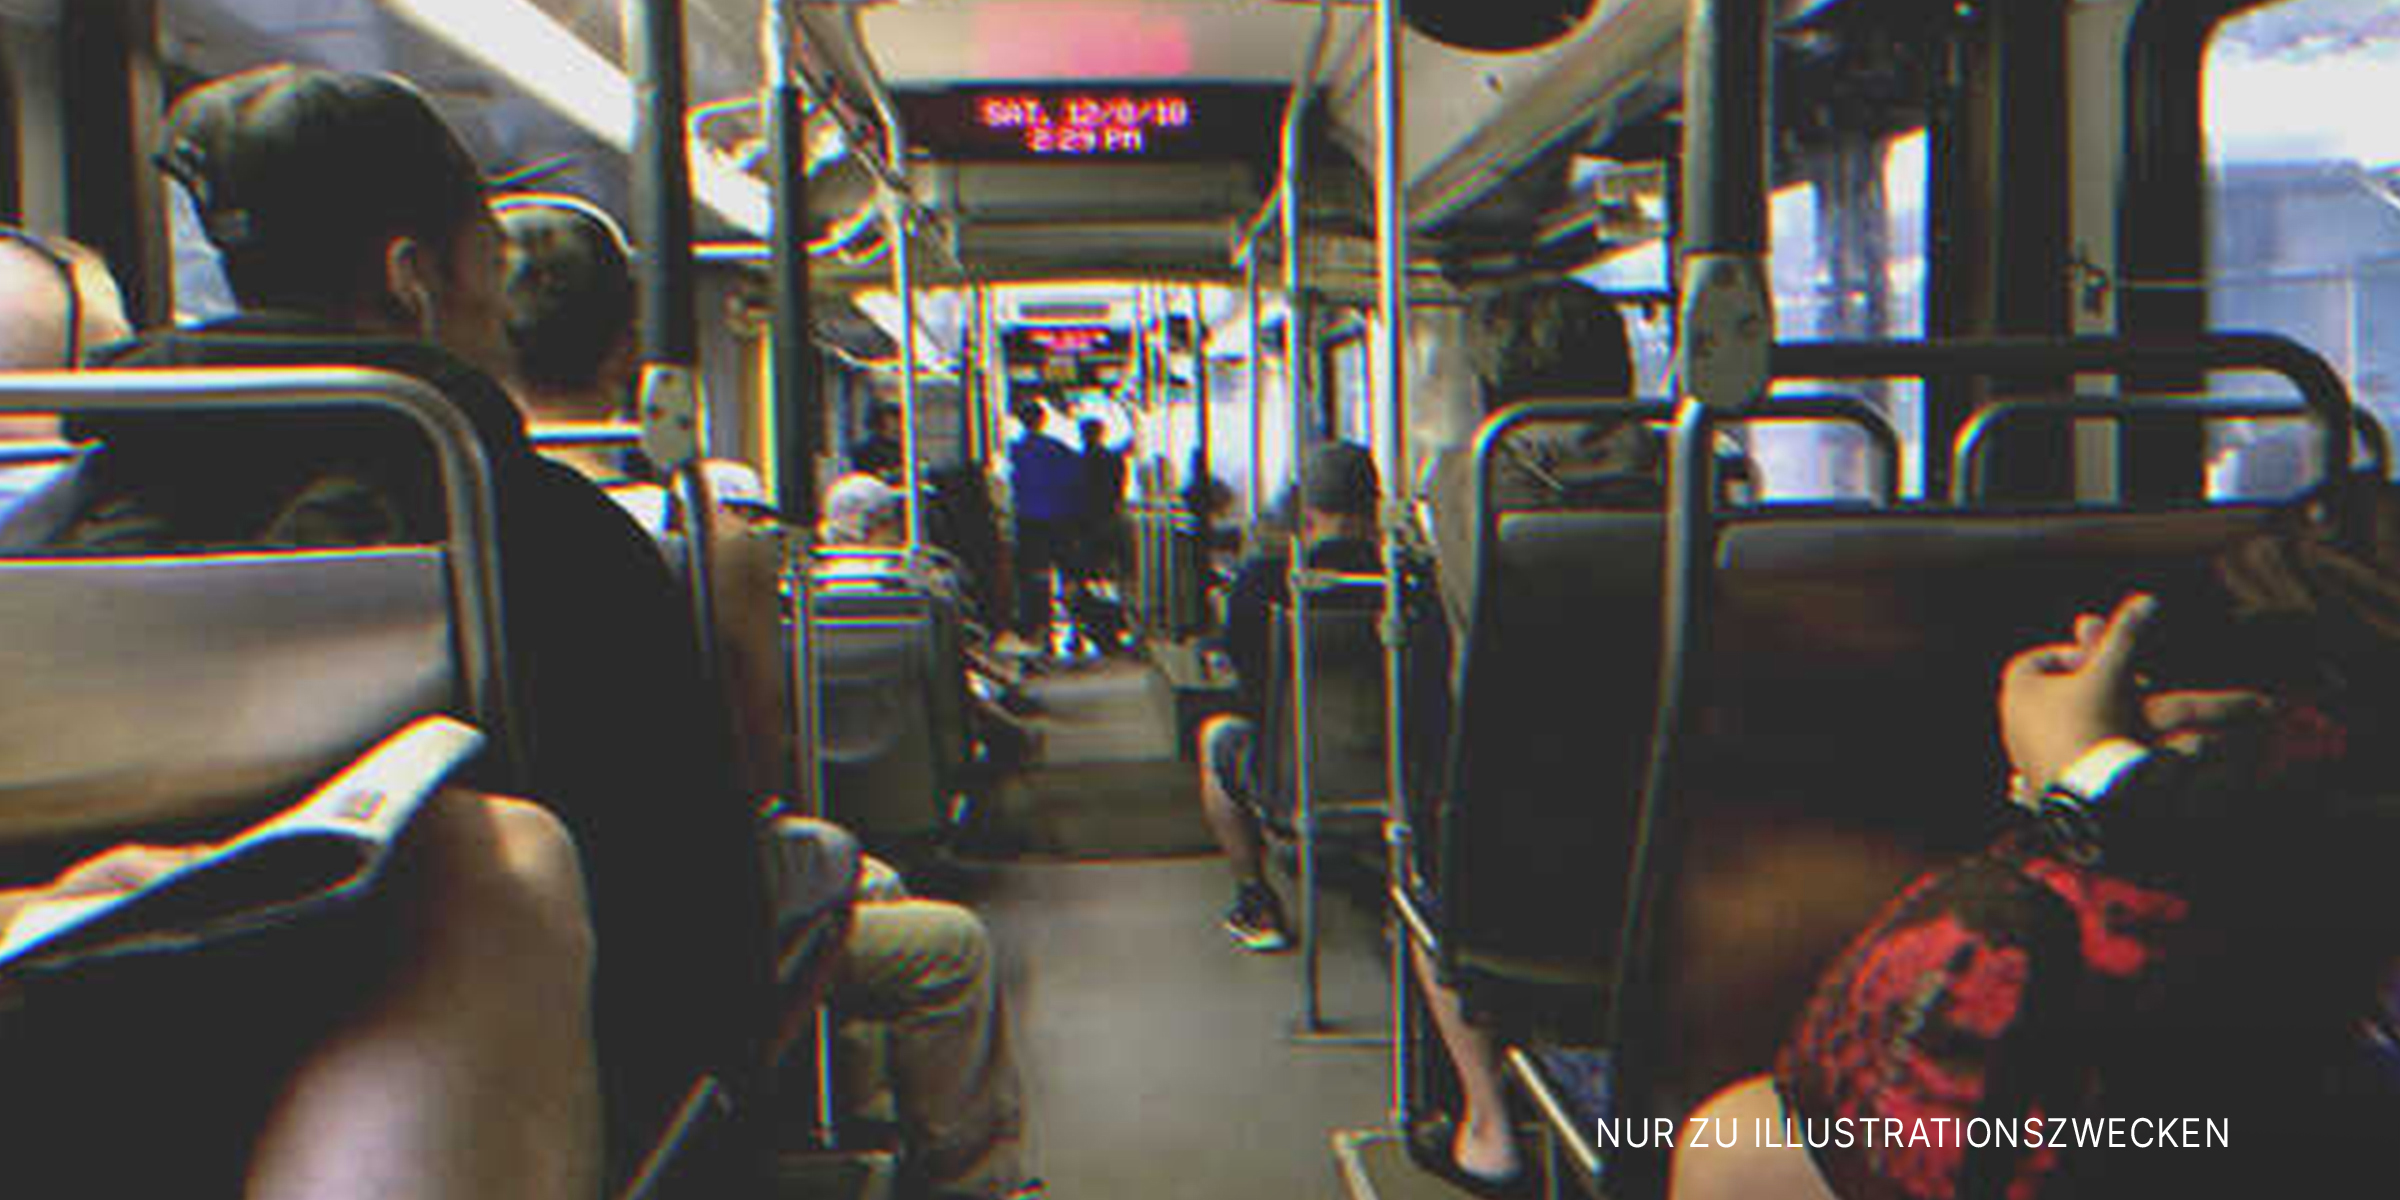 Fahrgäste im Bus | Quelle: Flickr / Simon_sees